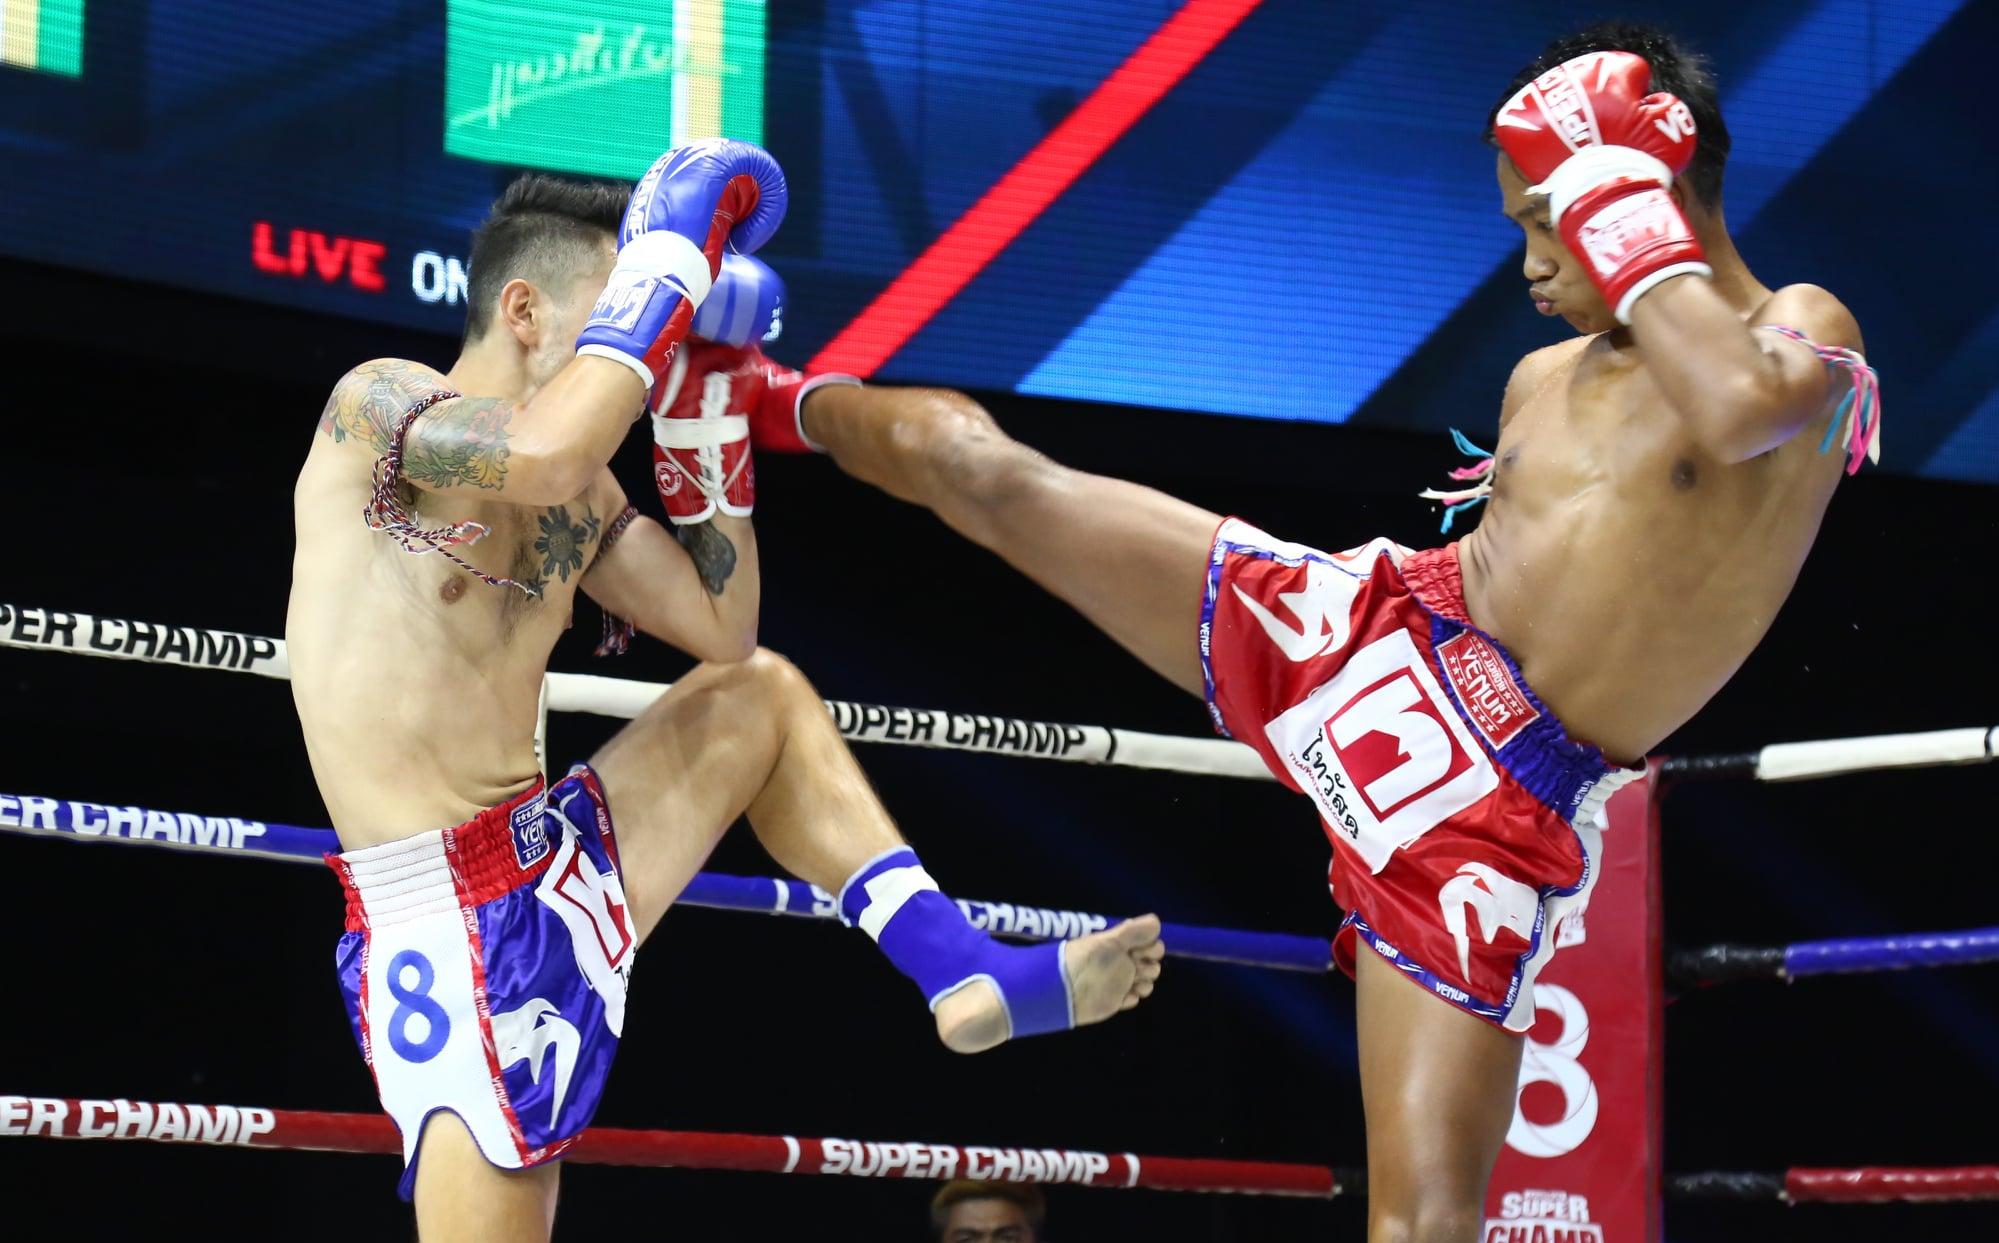 泰拳超级冠军55公斤级泰国选手布洛伊vs英囯选手约书亚诺威尔